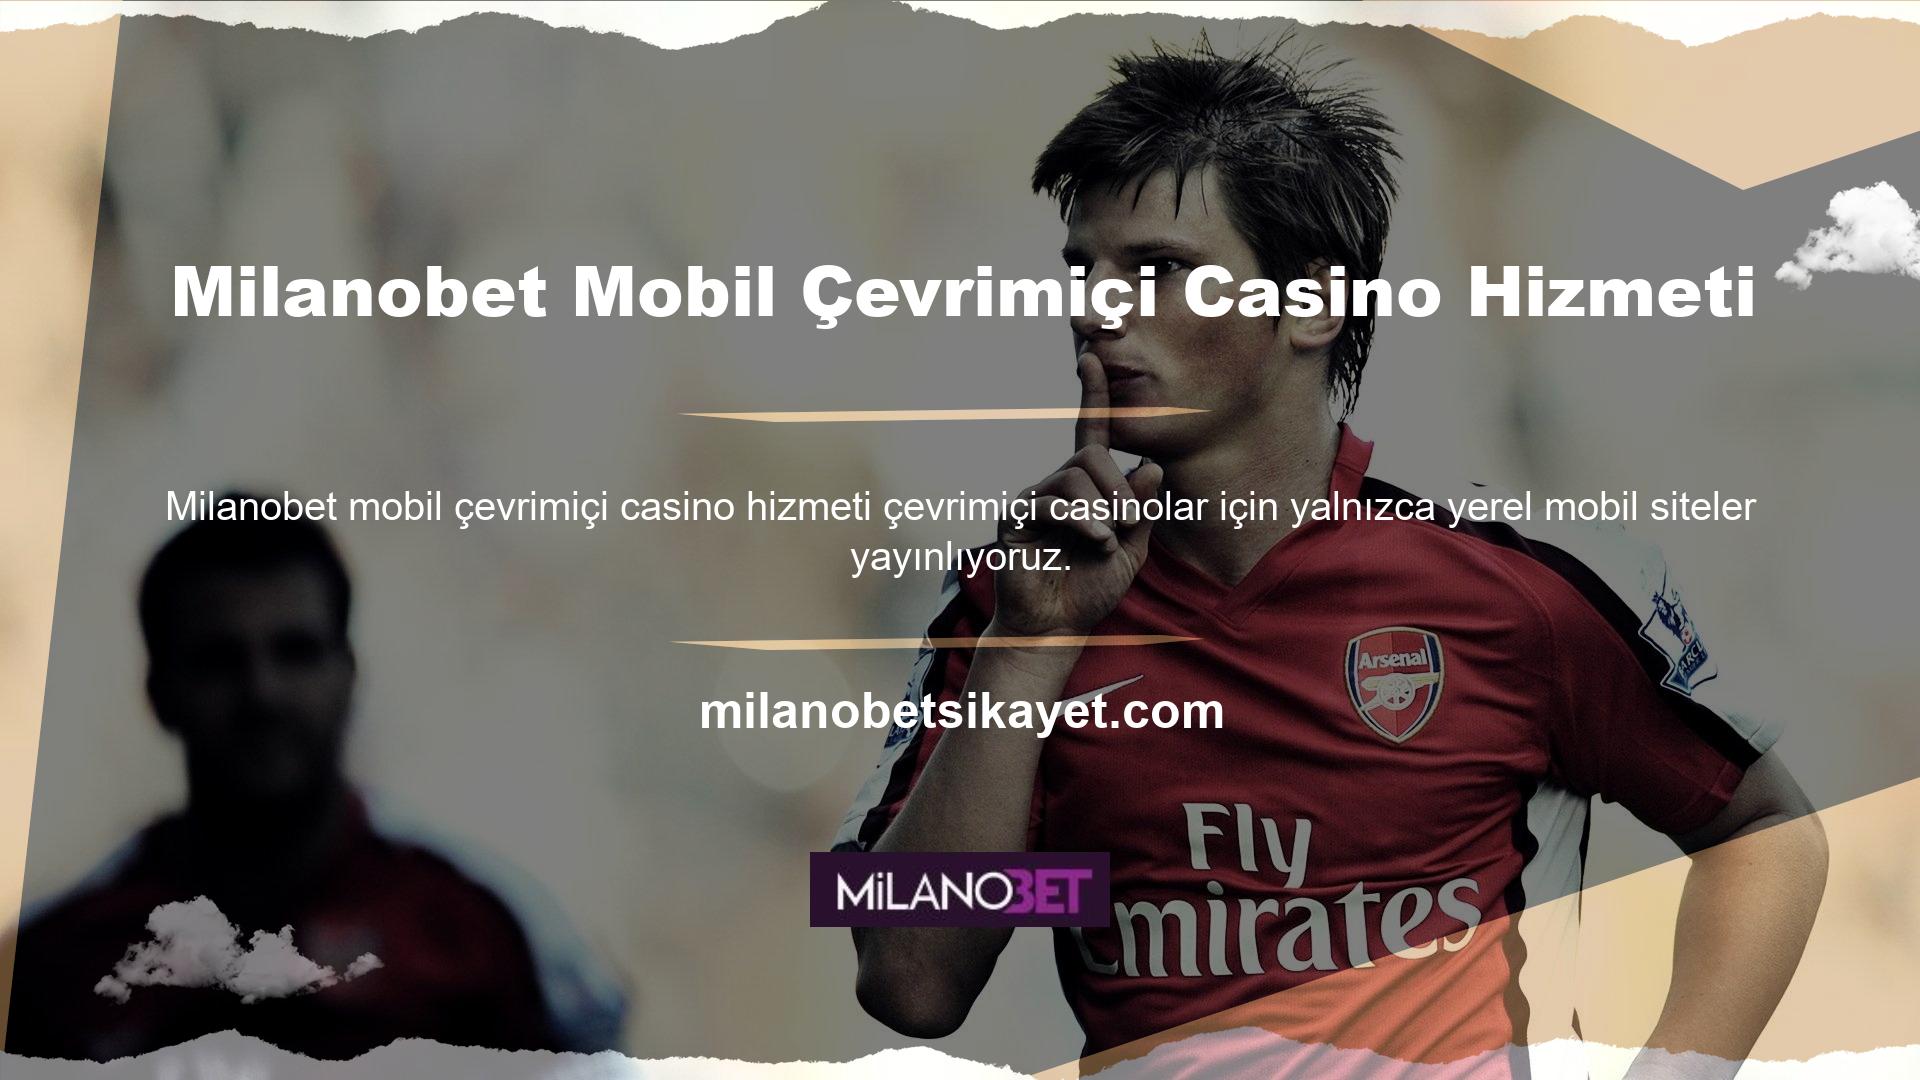 Şu anda ülkemizde faaliyet gösteren mobil casino siteleri arasında en kaliteli hizmeti ve web sitesini Milanobet sunmaktadır